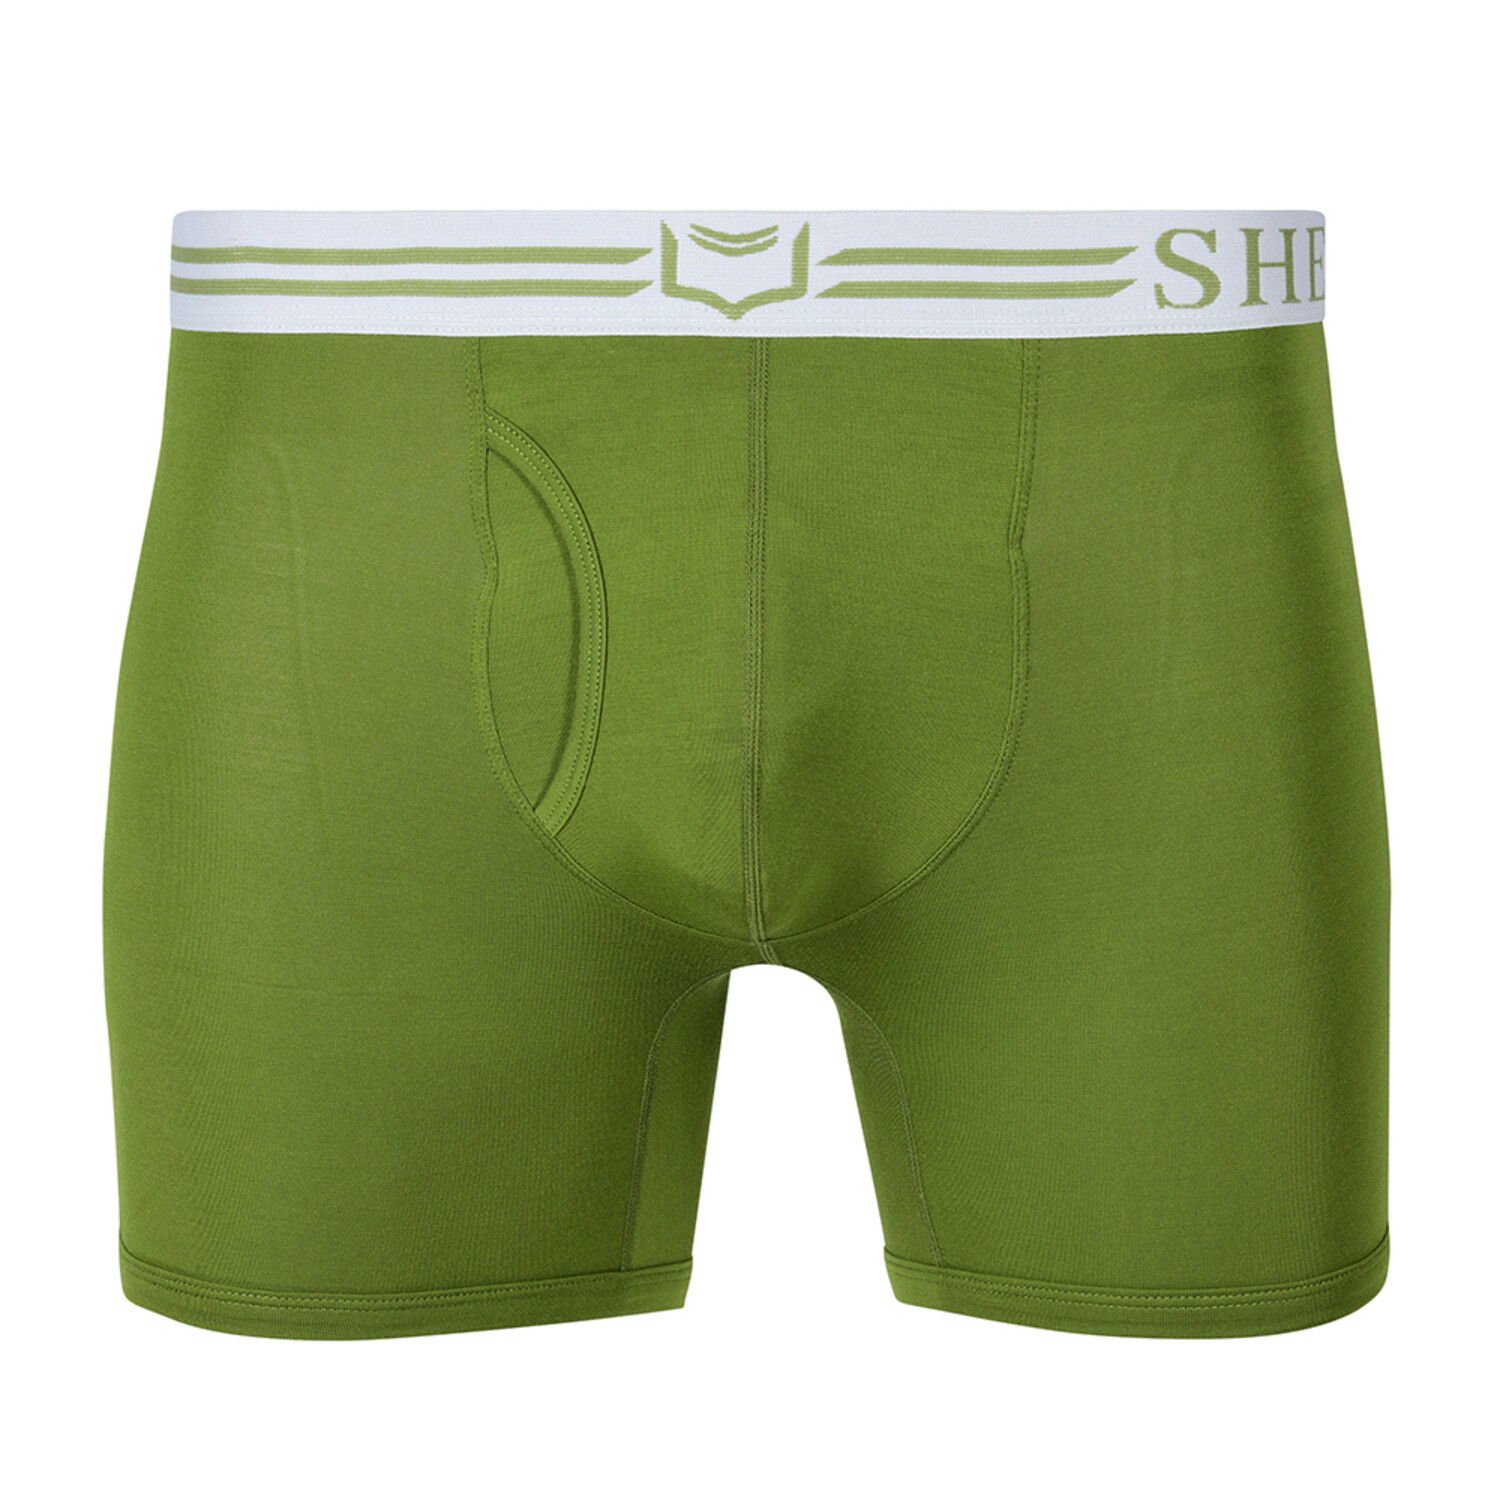 Sheath 4.0 Dual Pouch Boxer Brief // Mossy Oak (Medium) - Sheath Underwear  - Touch of Modern